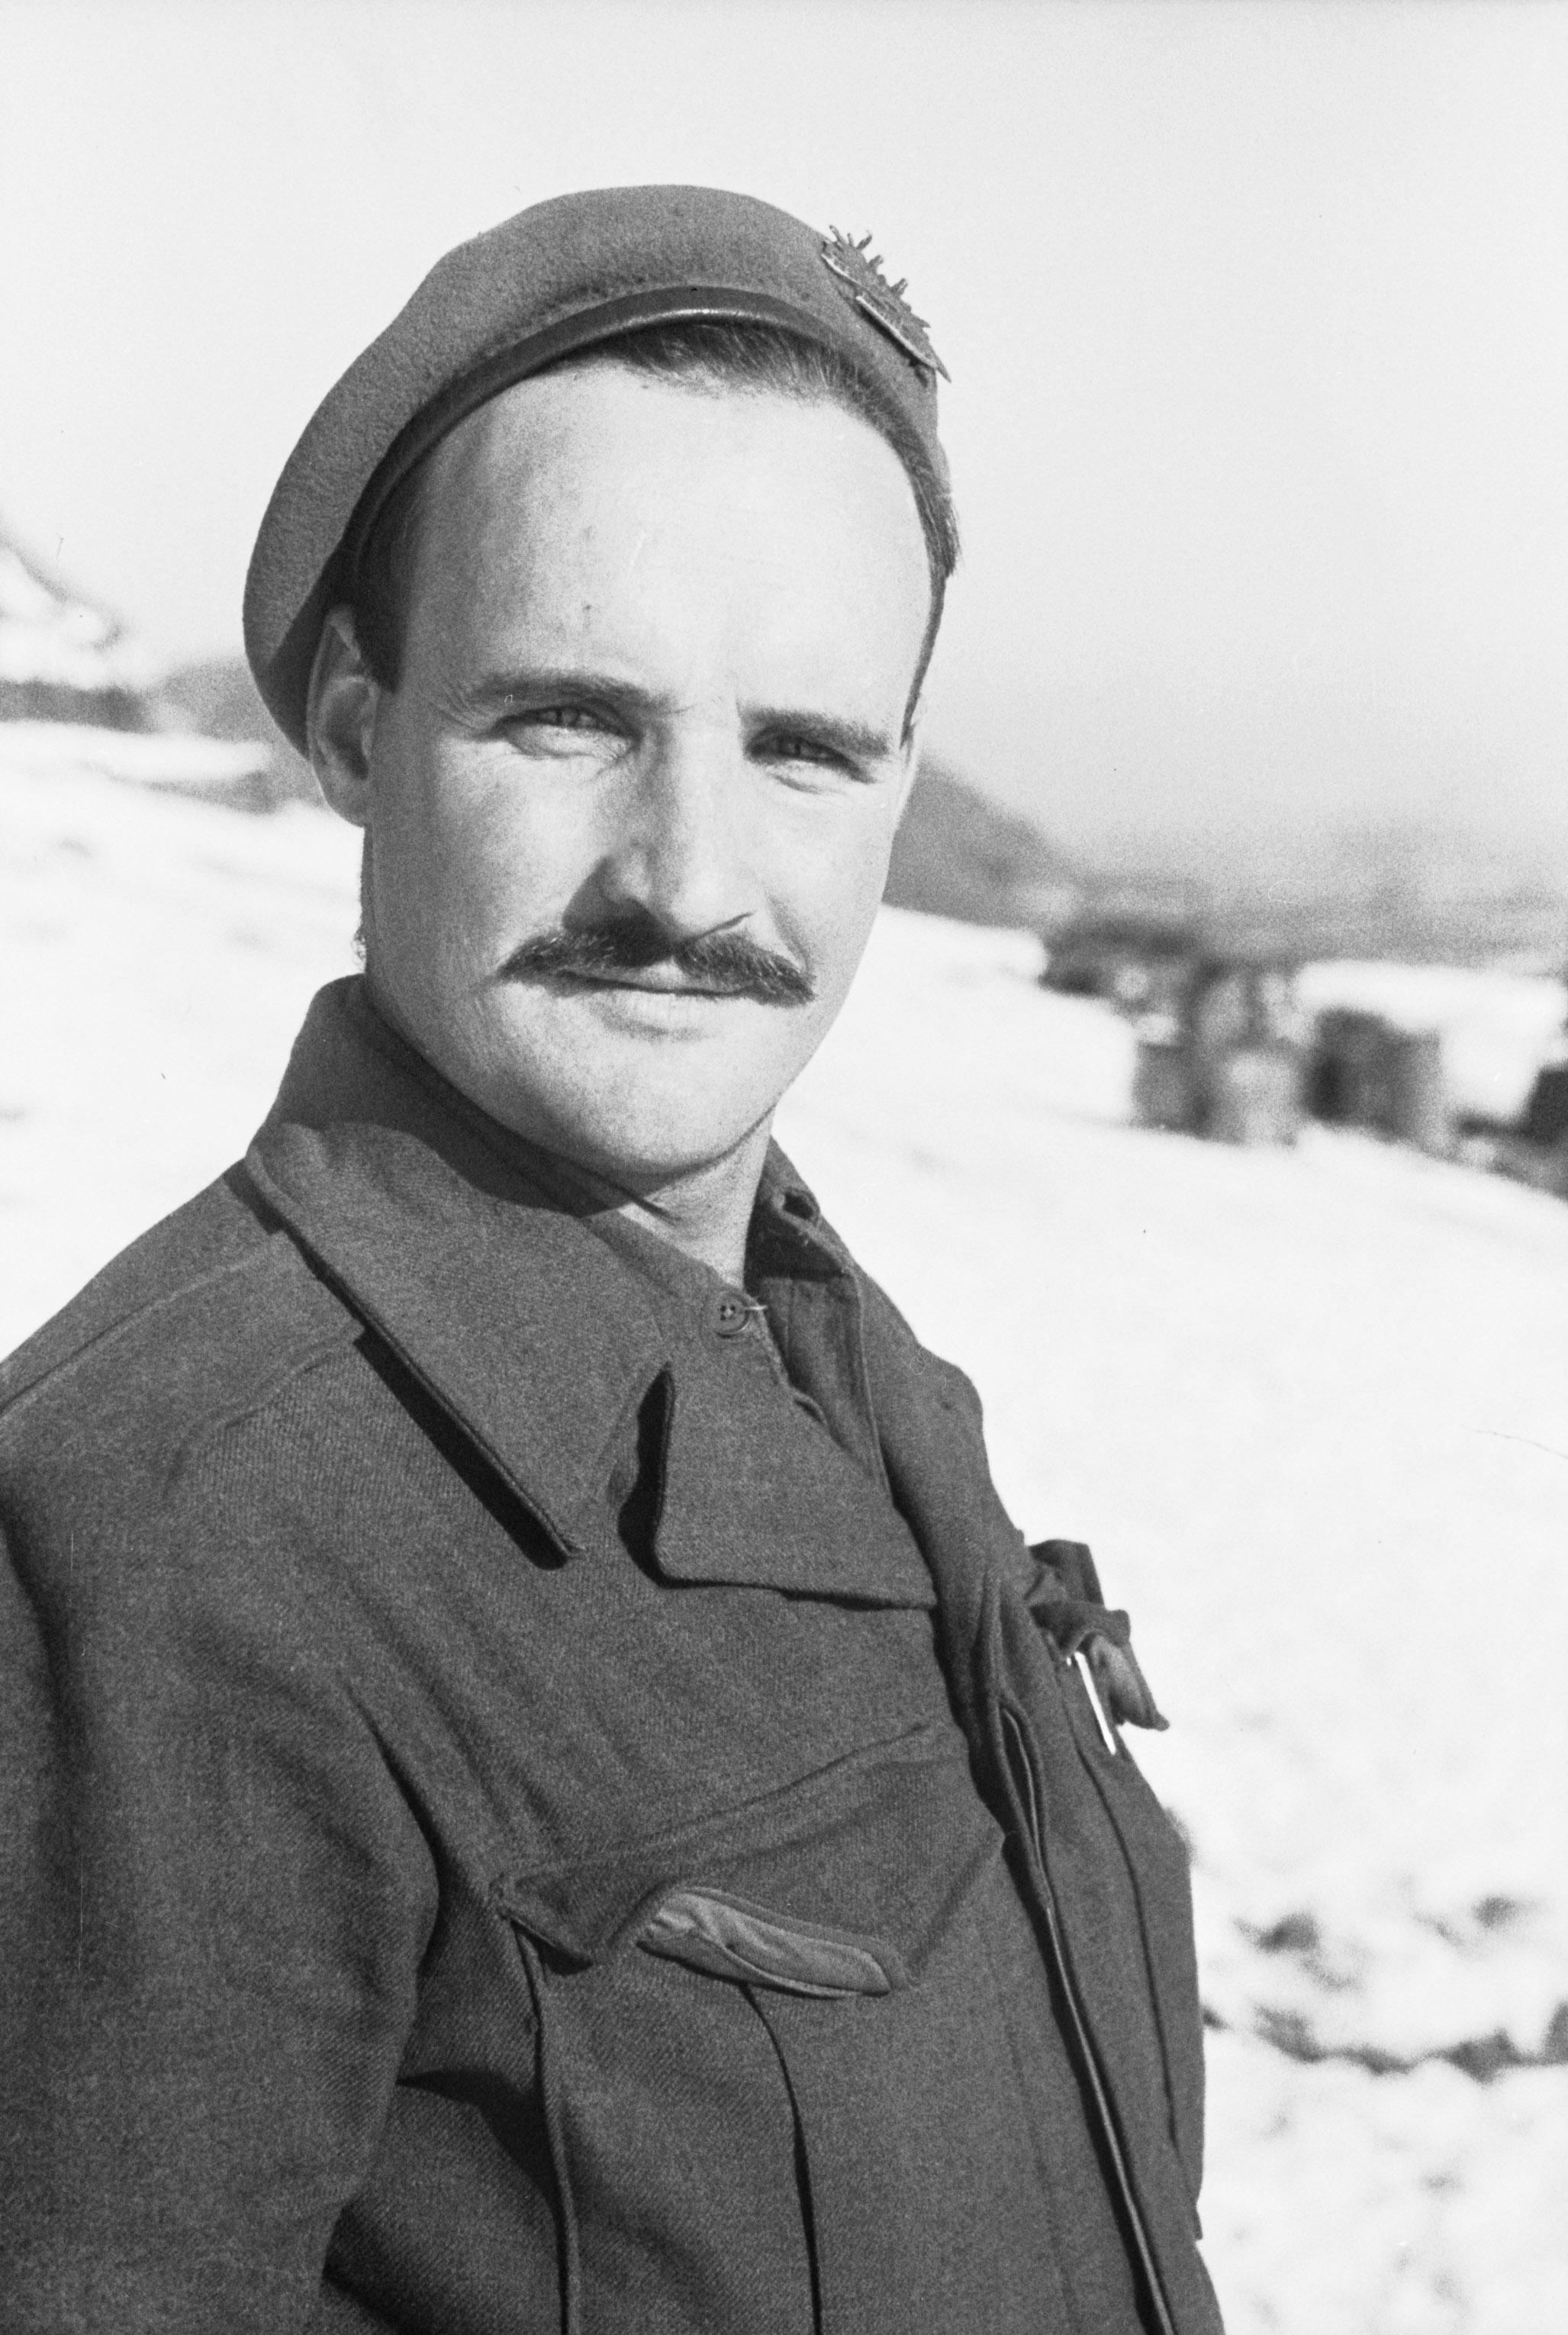 An unidentified soldier of the 3rd Battalion, The Royal Australian Regiment (3RAR), taken in the field in Korea. (2963845210)